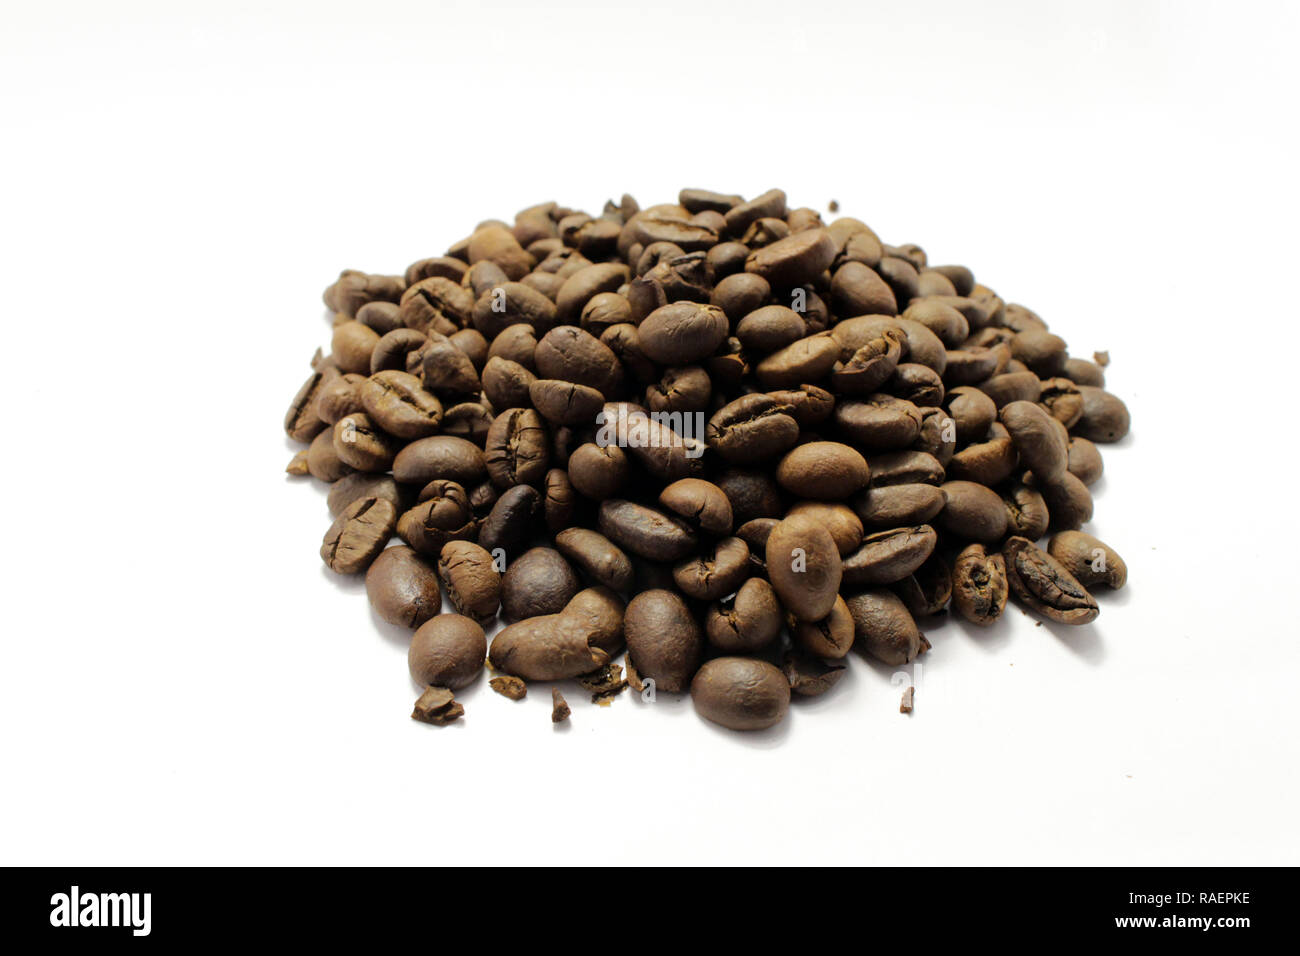 Les grains de café torréfié indonésiennes, votre source pour une tasse de café. Frais ! Banque D'Images